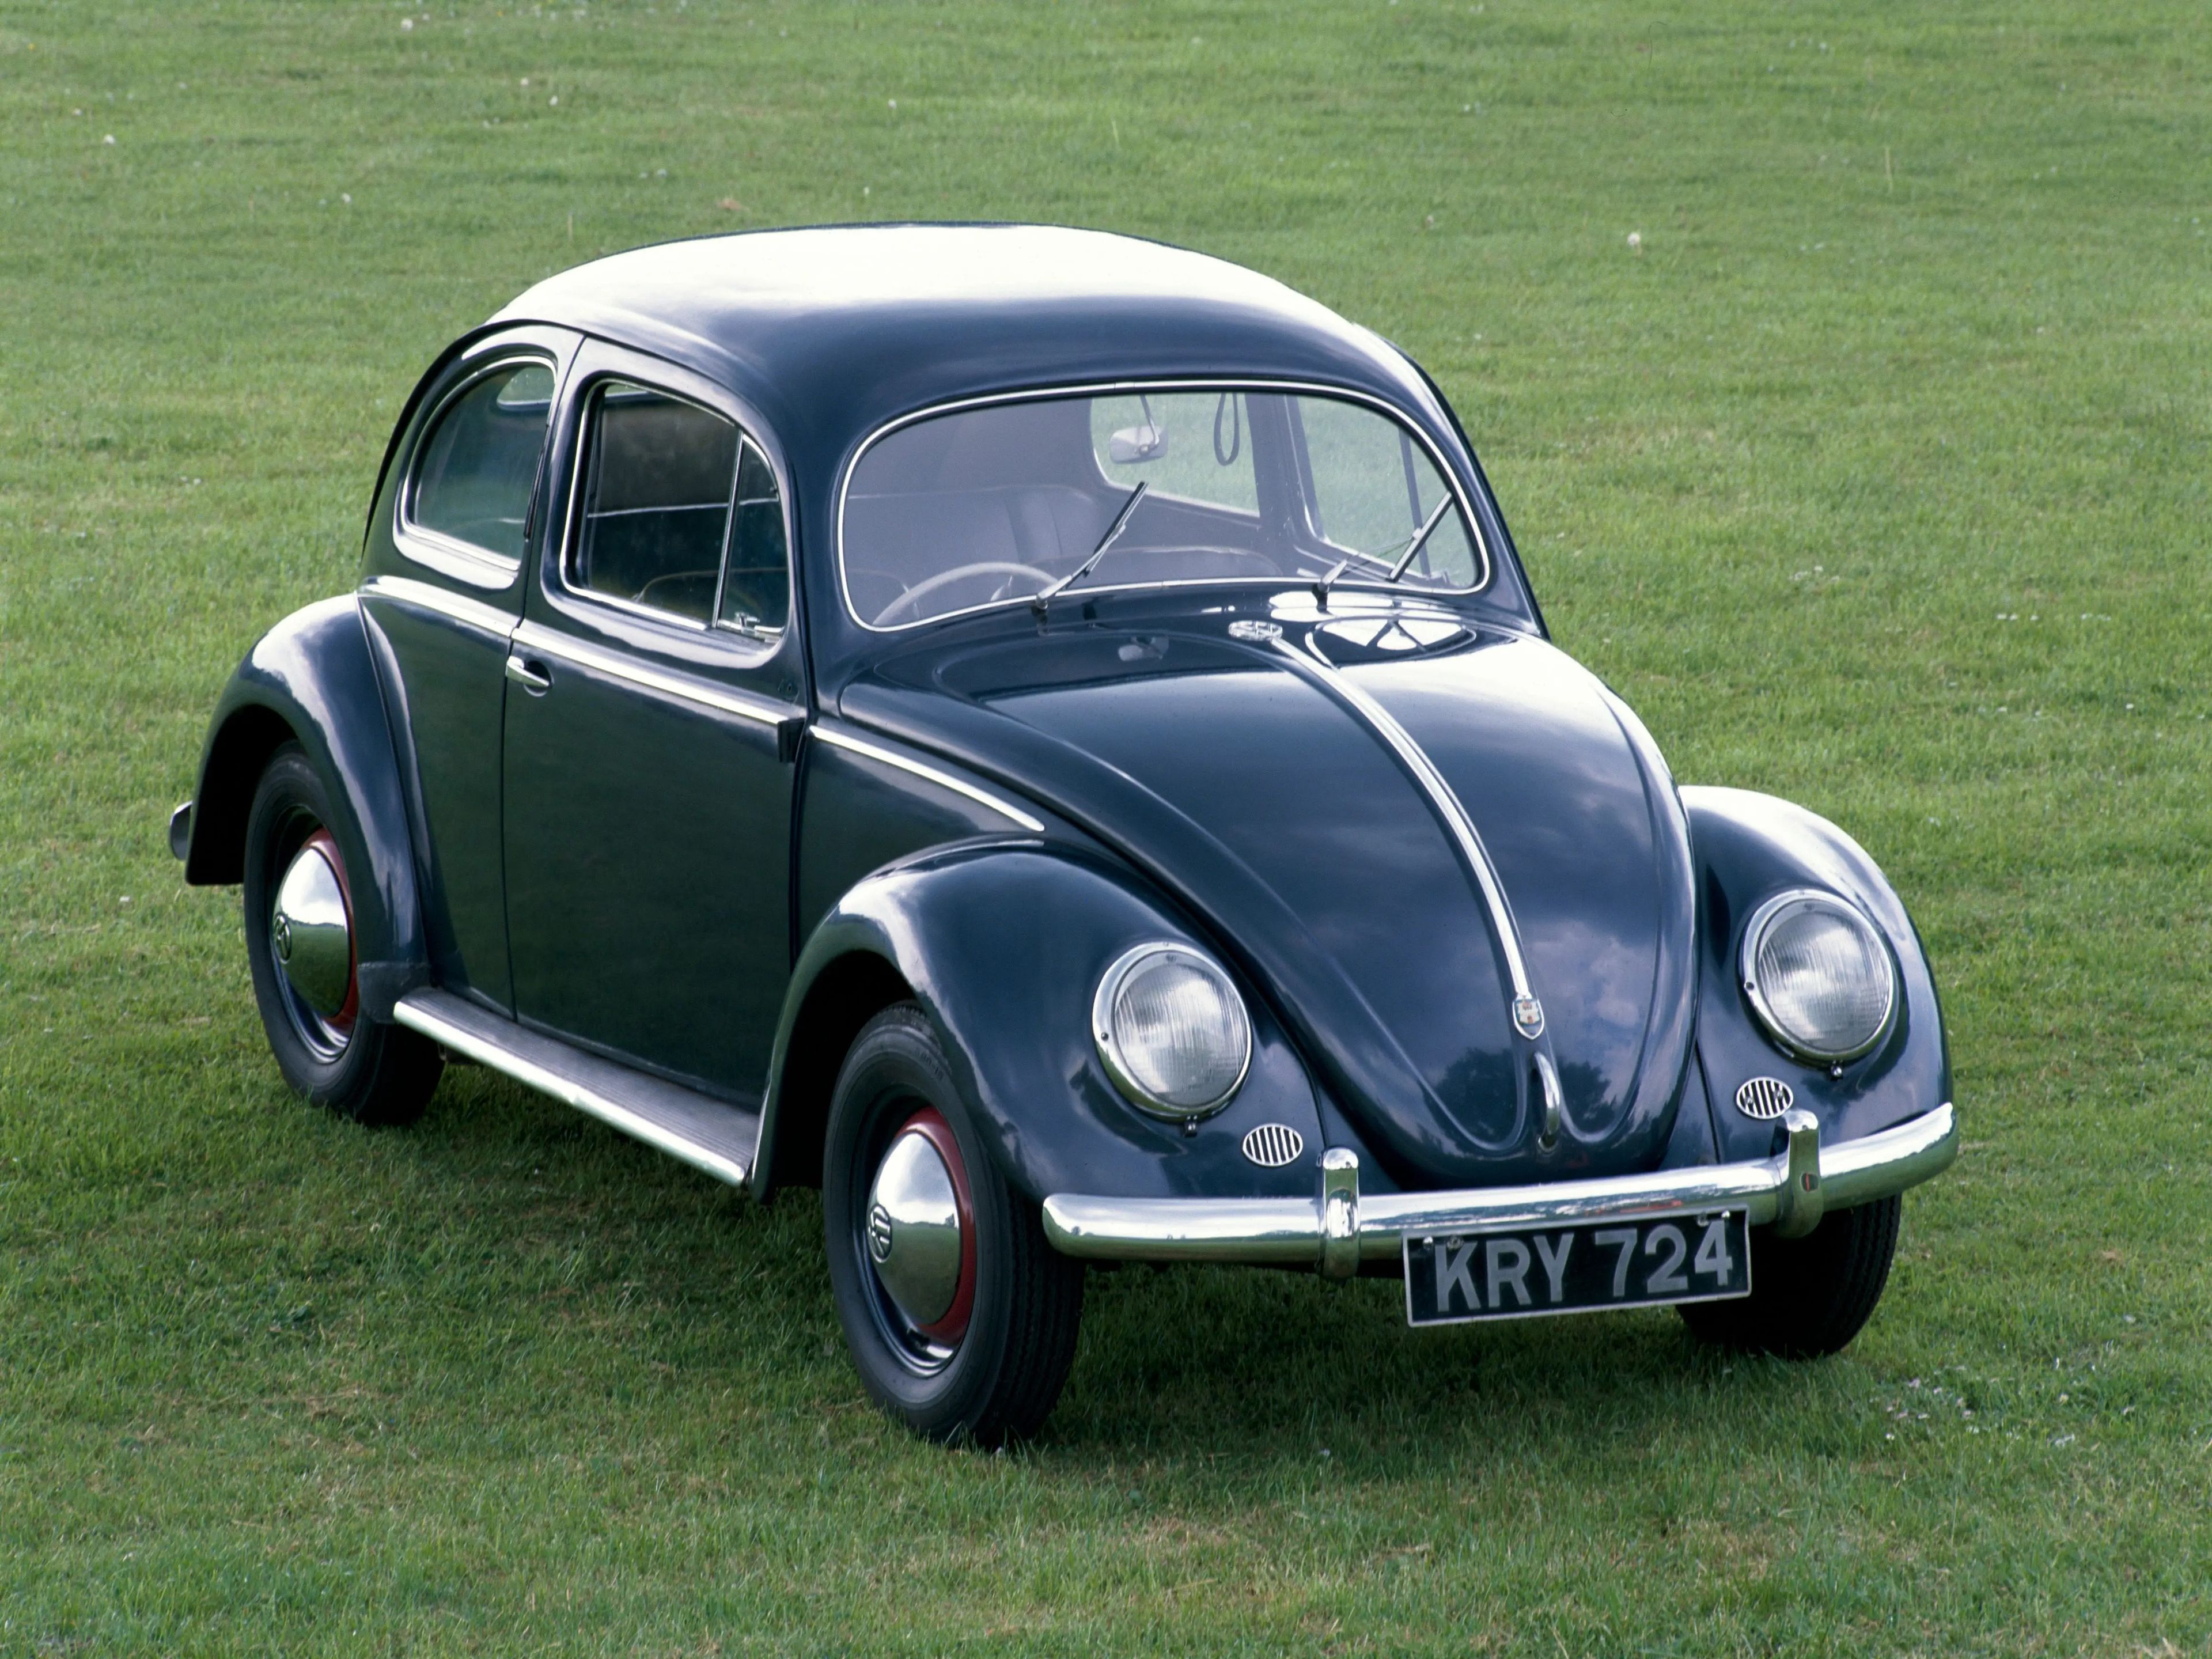 A 1953 Volkswagen Export Type 1 Beetle.